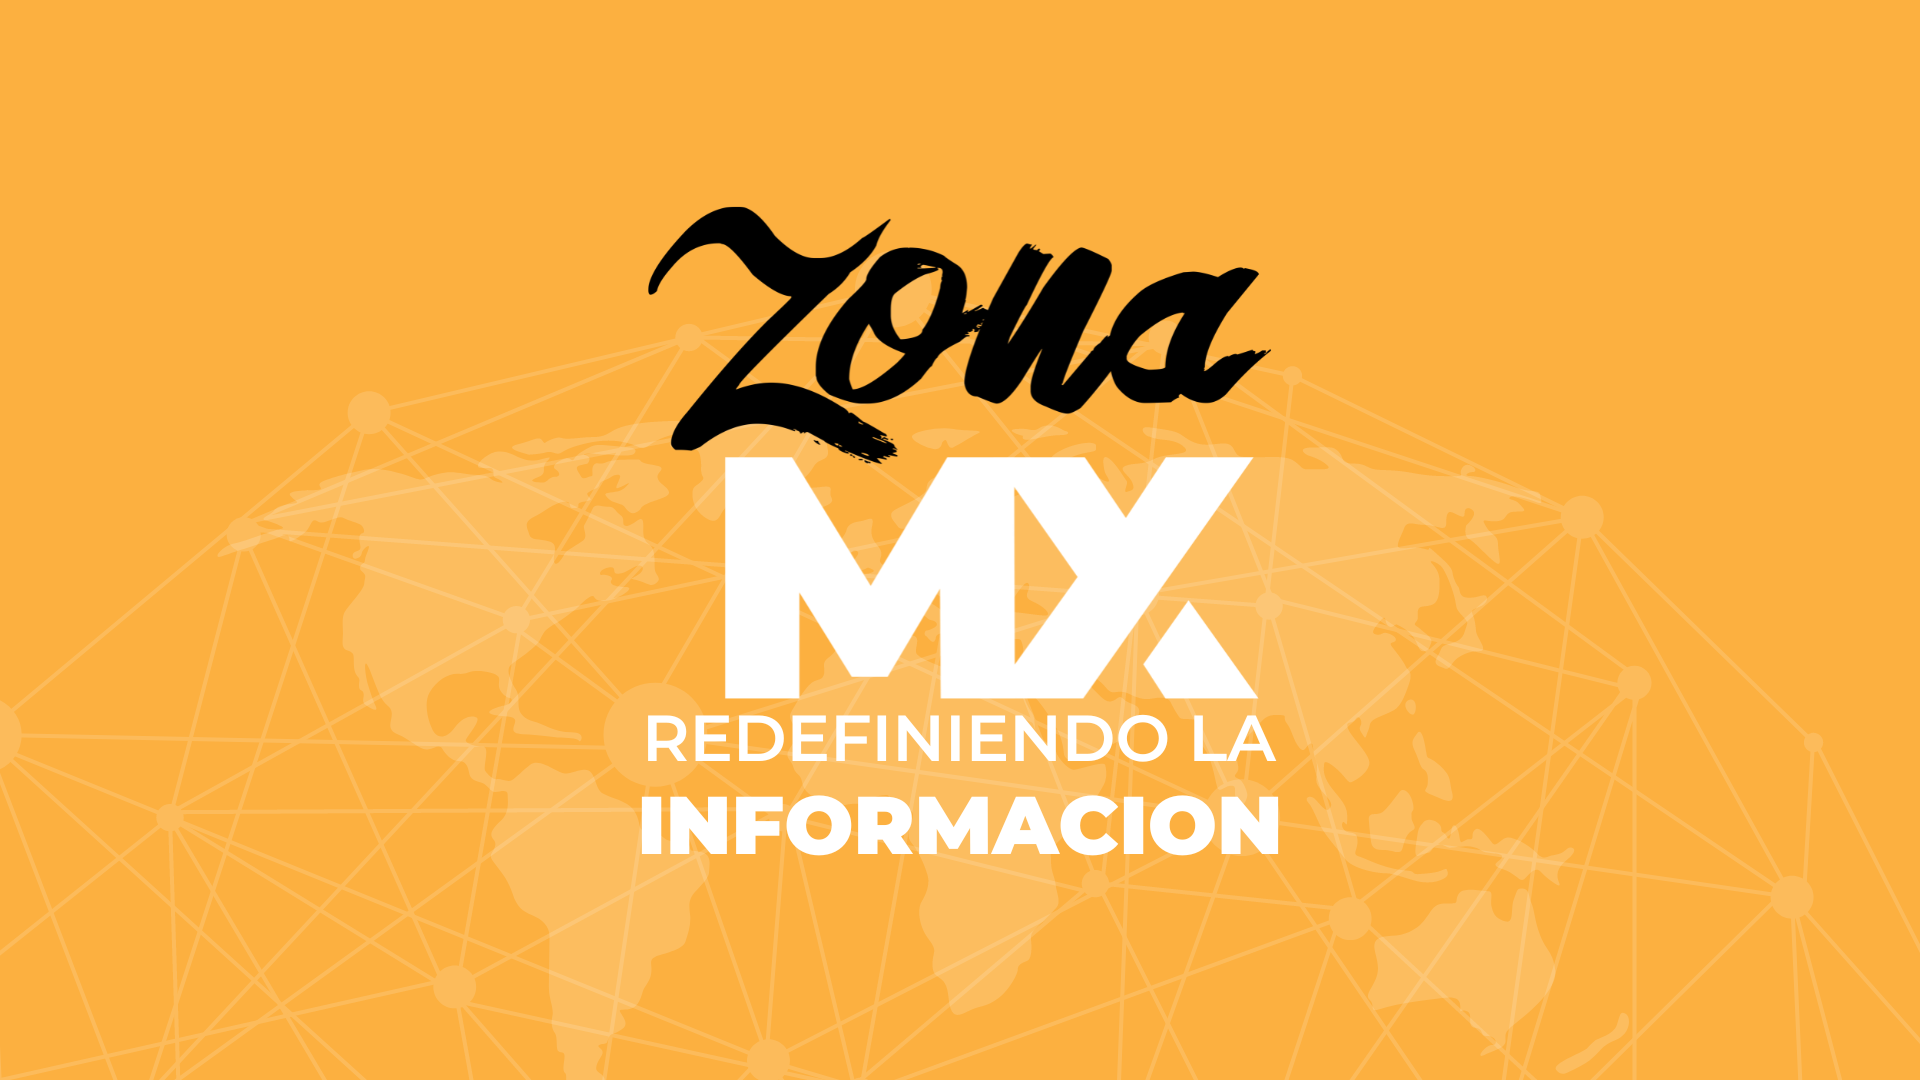 ZONA MX